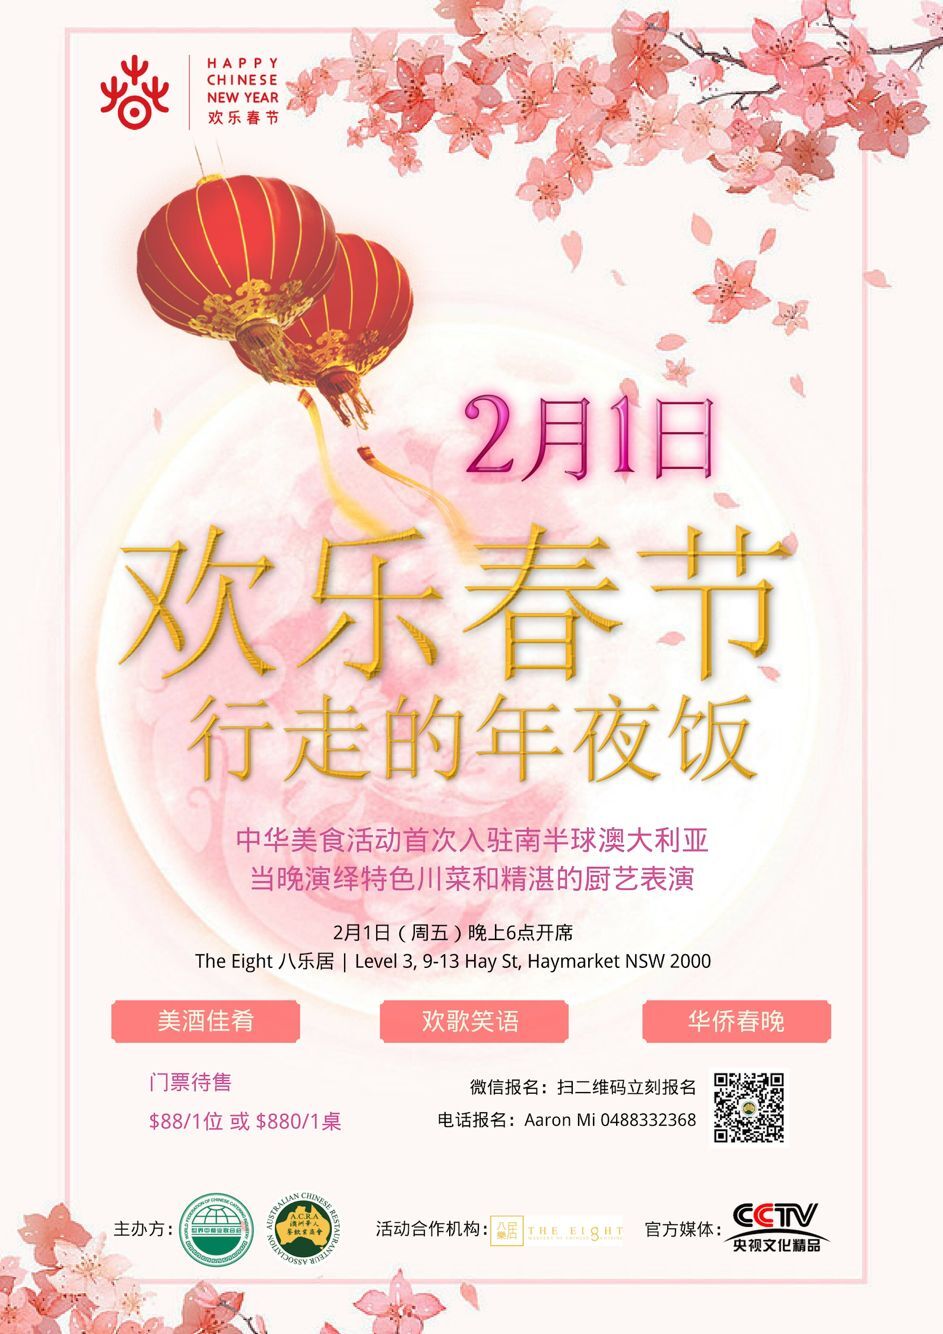 2 2 “欢乐春节—行走的年夜饭”中国美食活动入驻南半球